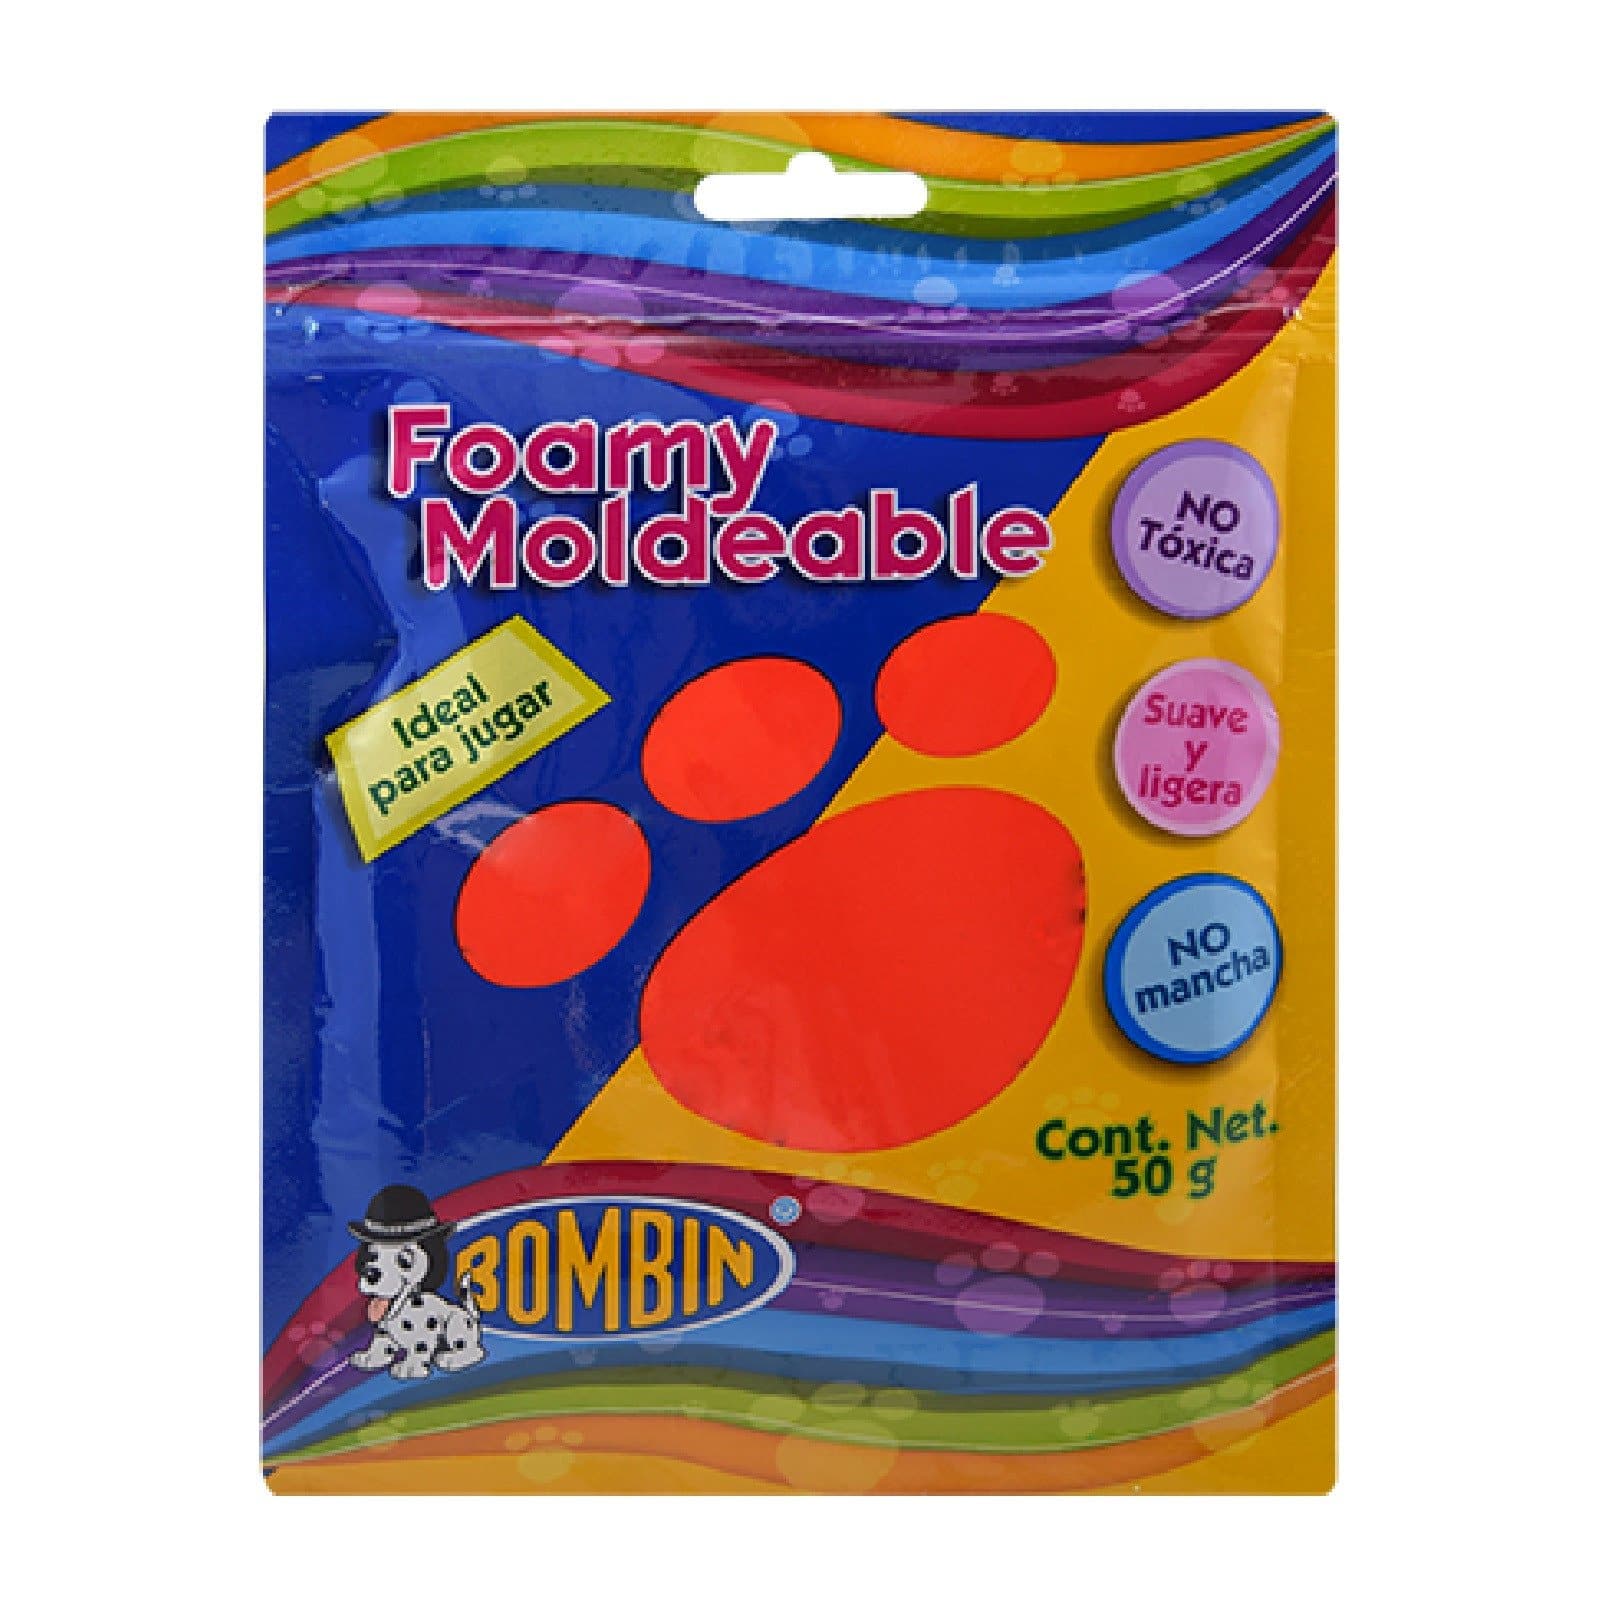 BOMBIN - Foamy moldeable